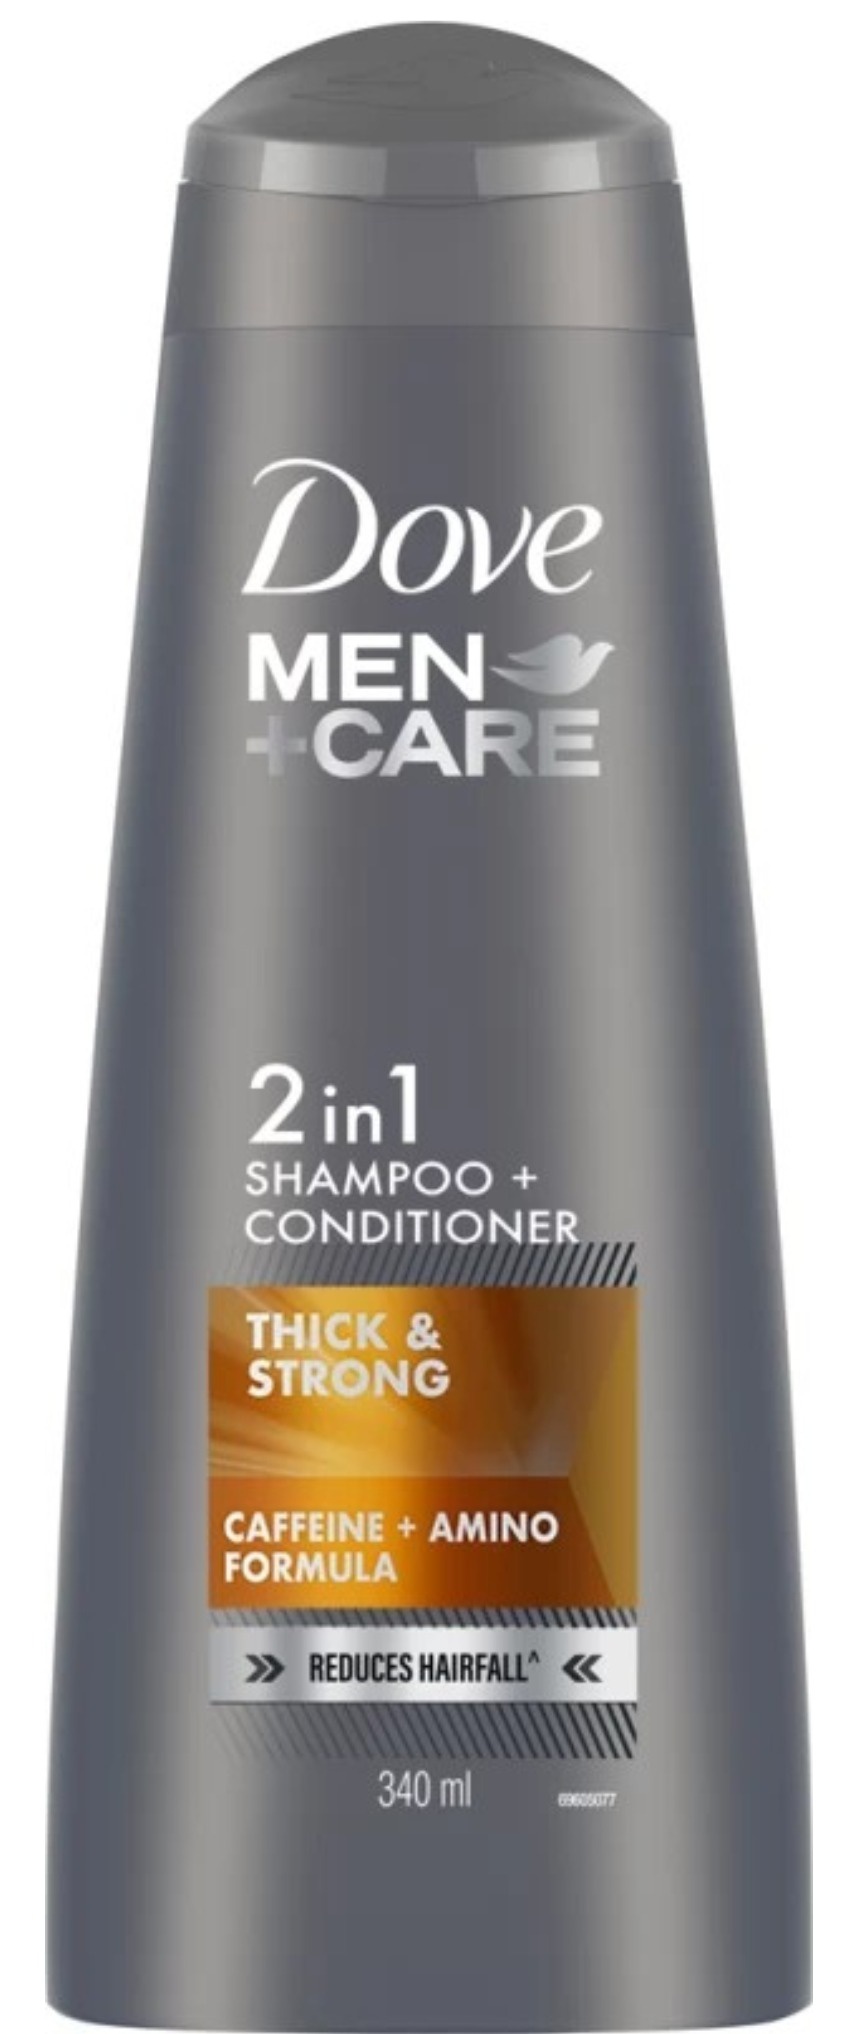 Dove Men+ Care Shampoo